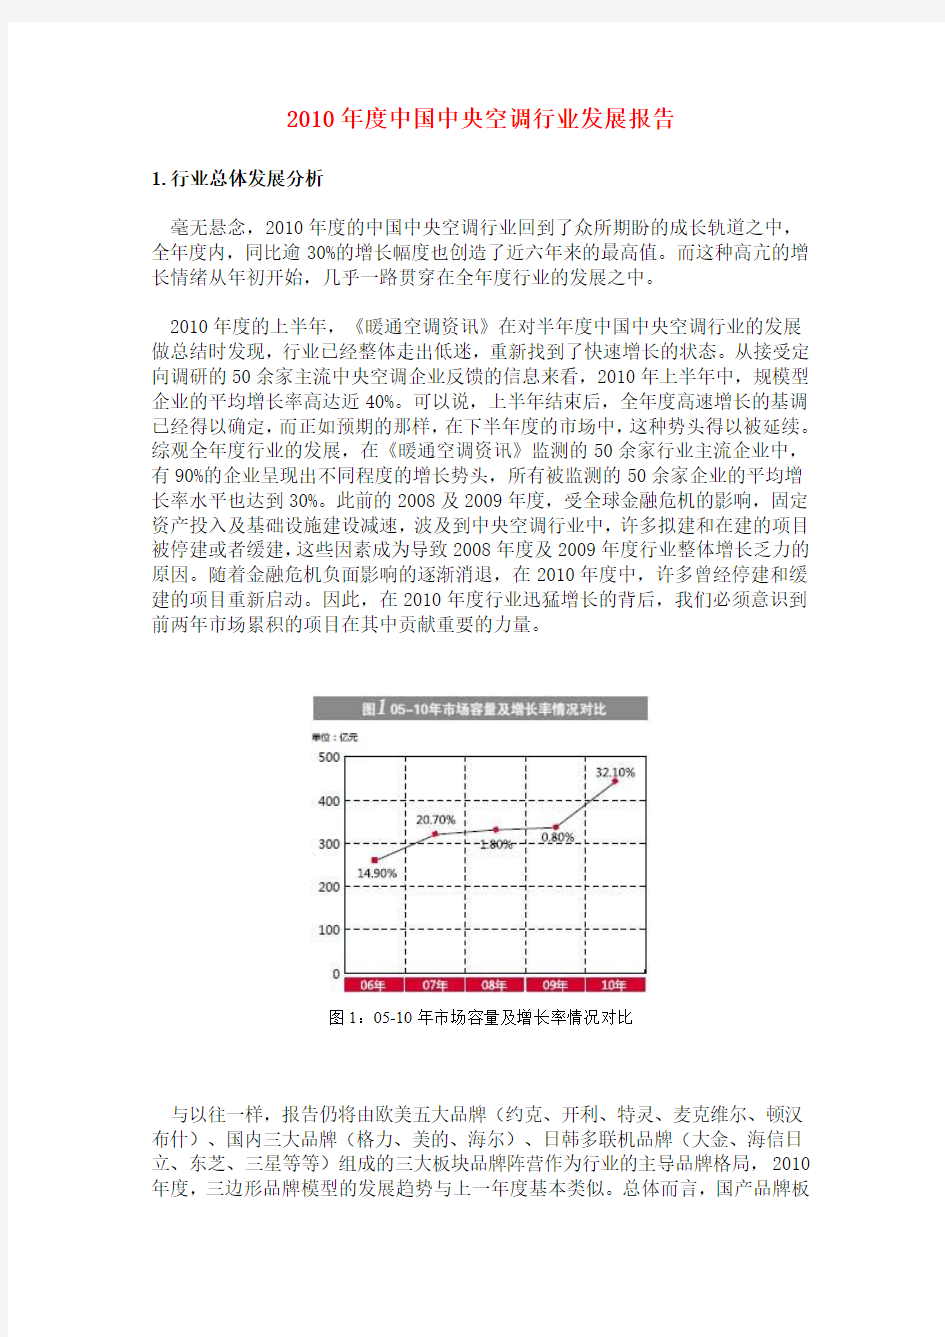 中国中央空调行业发展报告